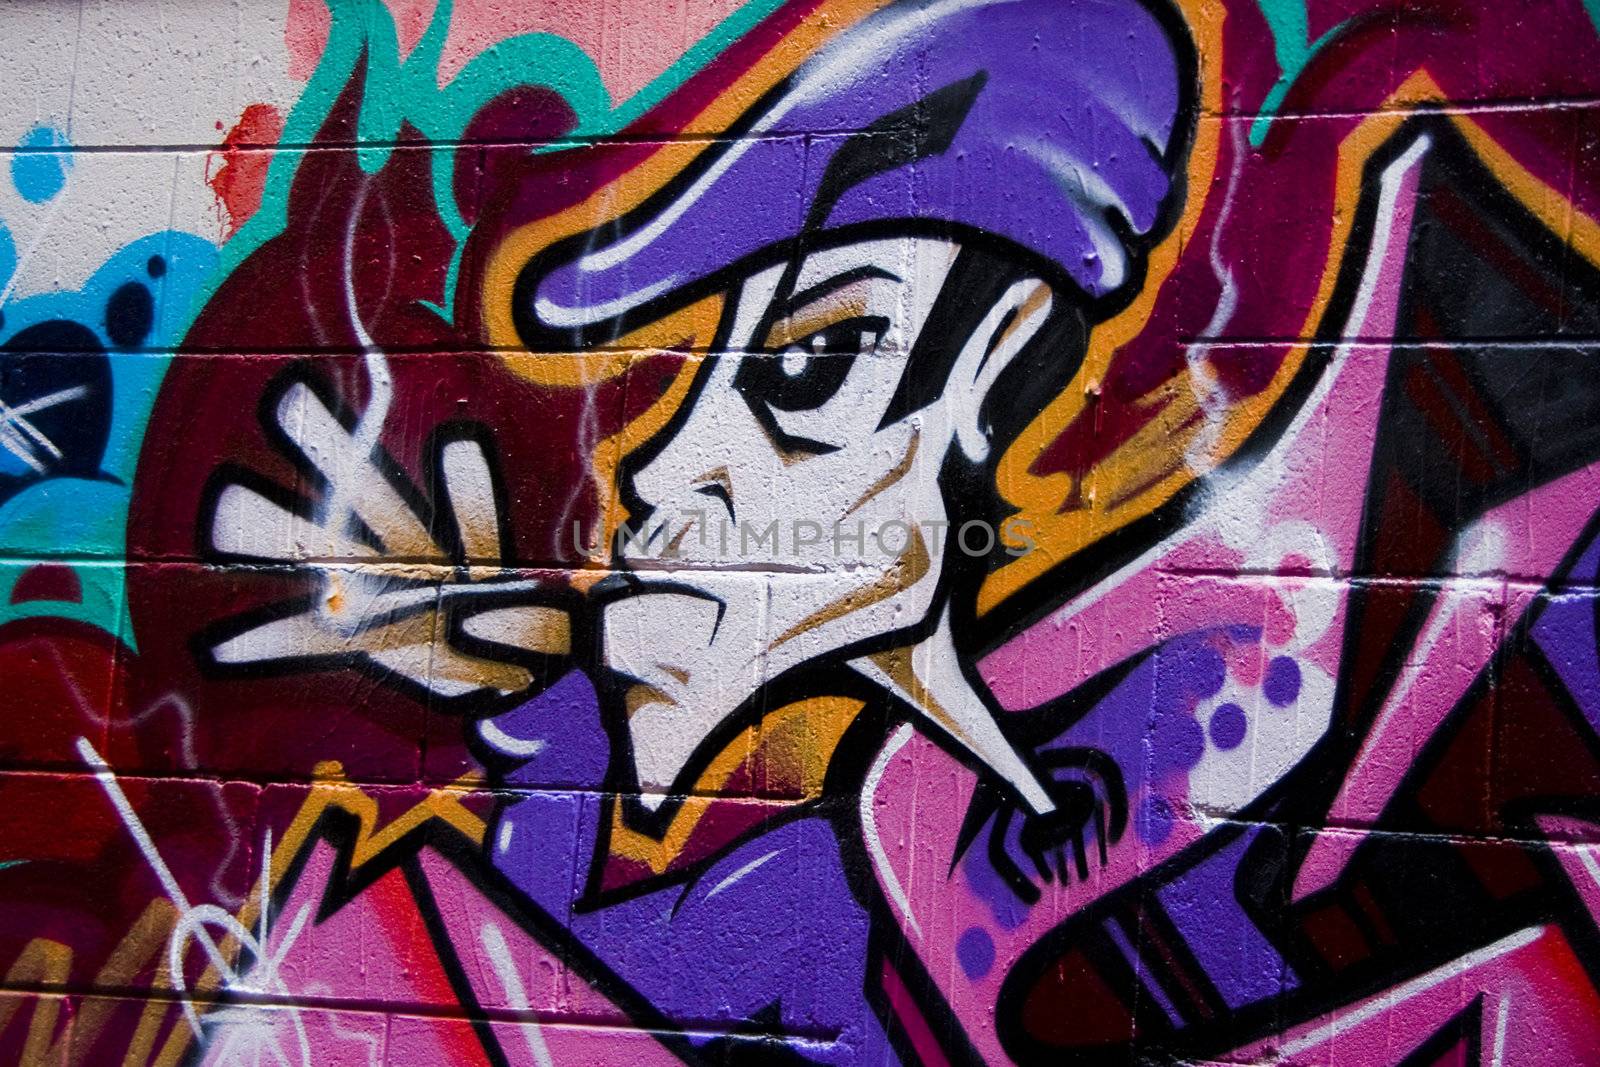 Graffiti of smoking man by Claudine